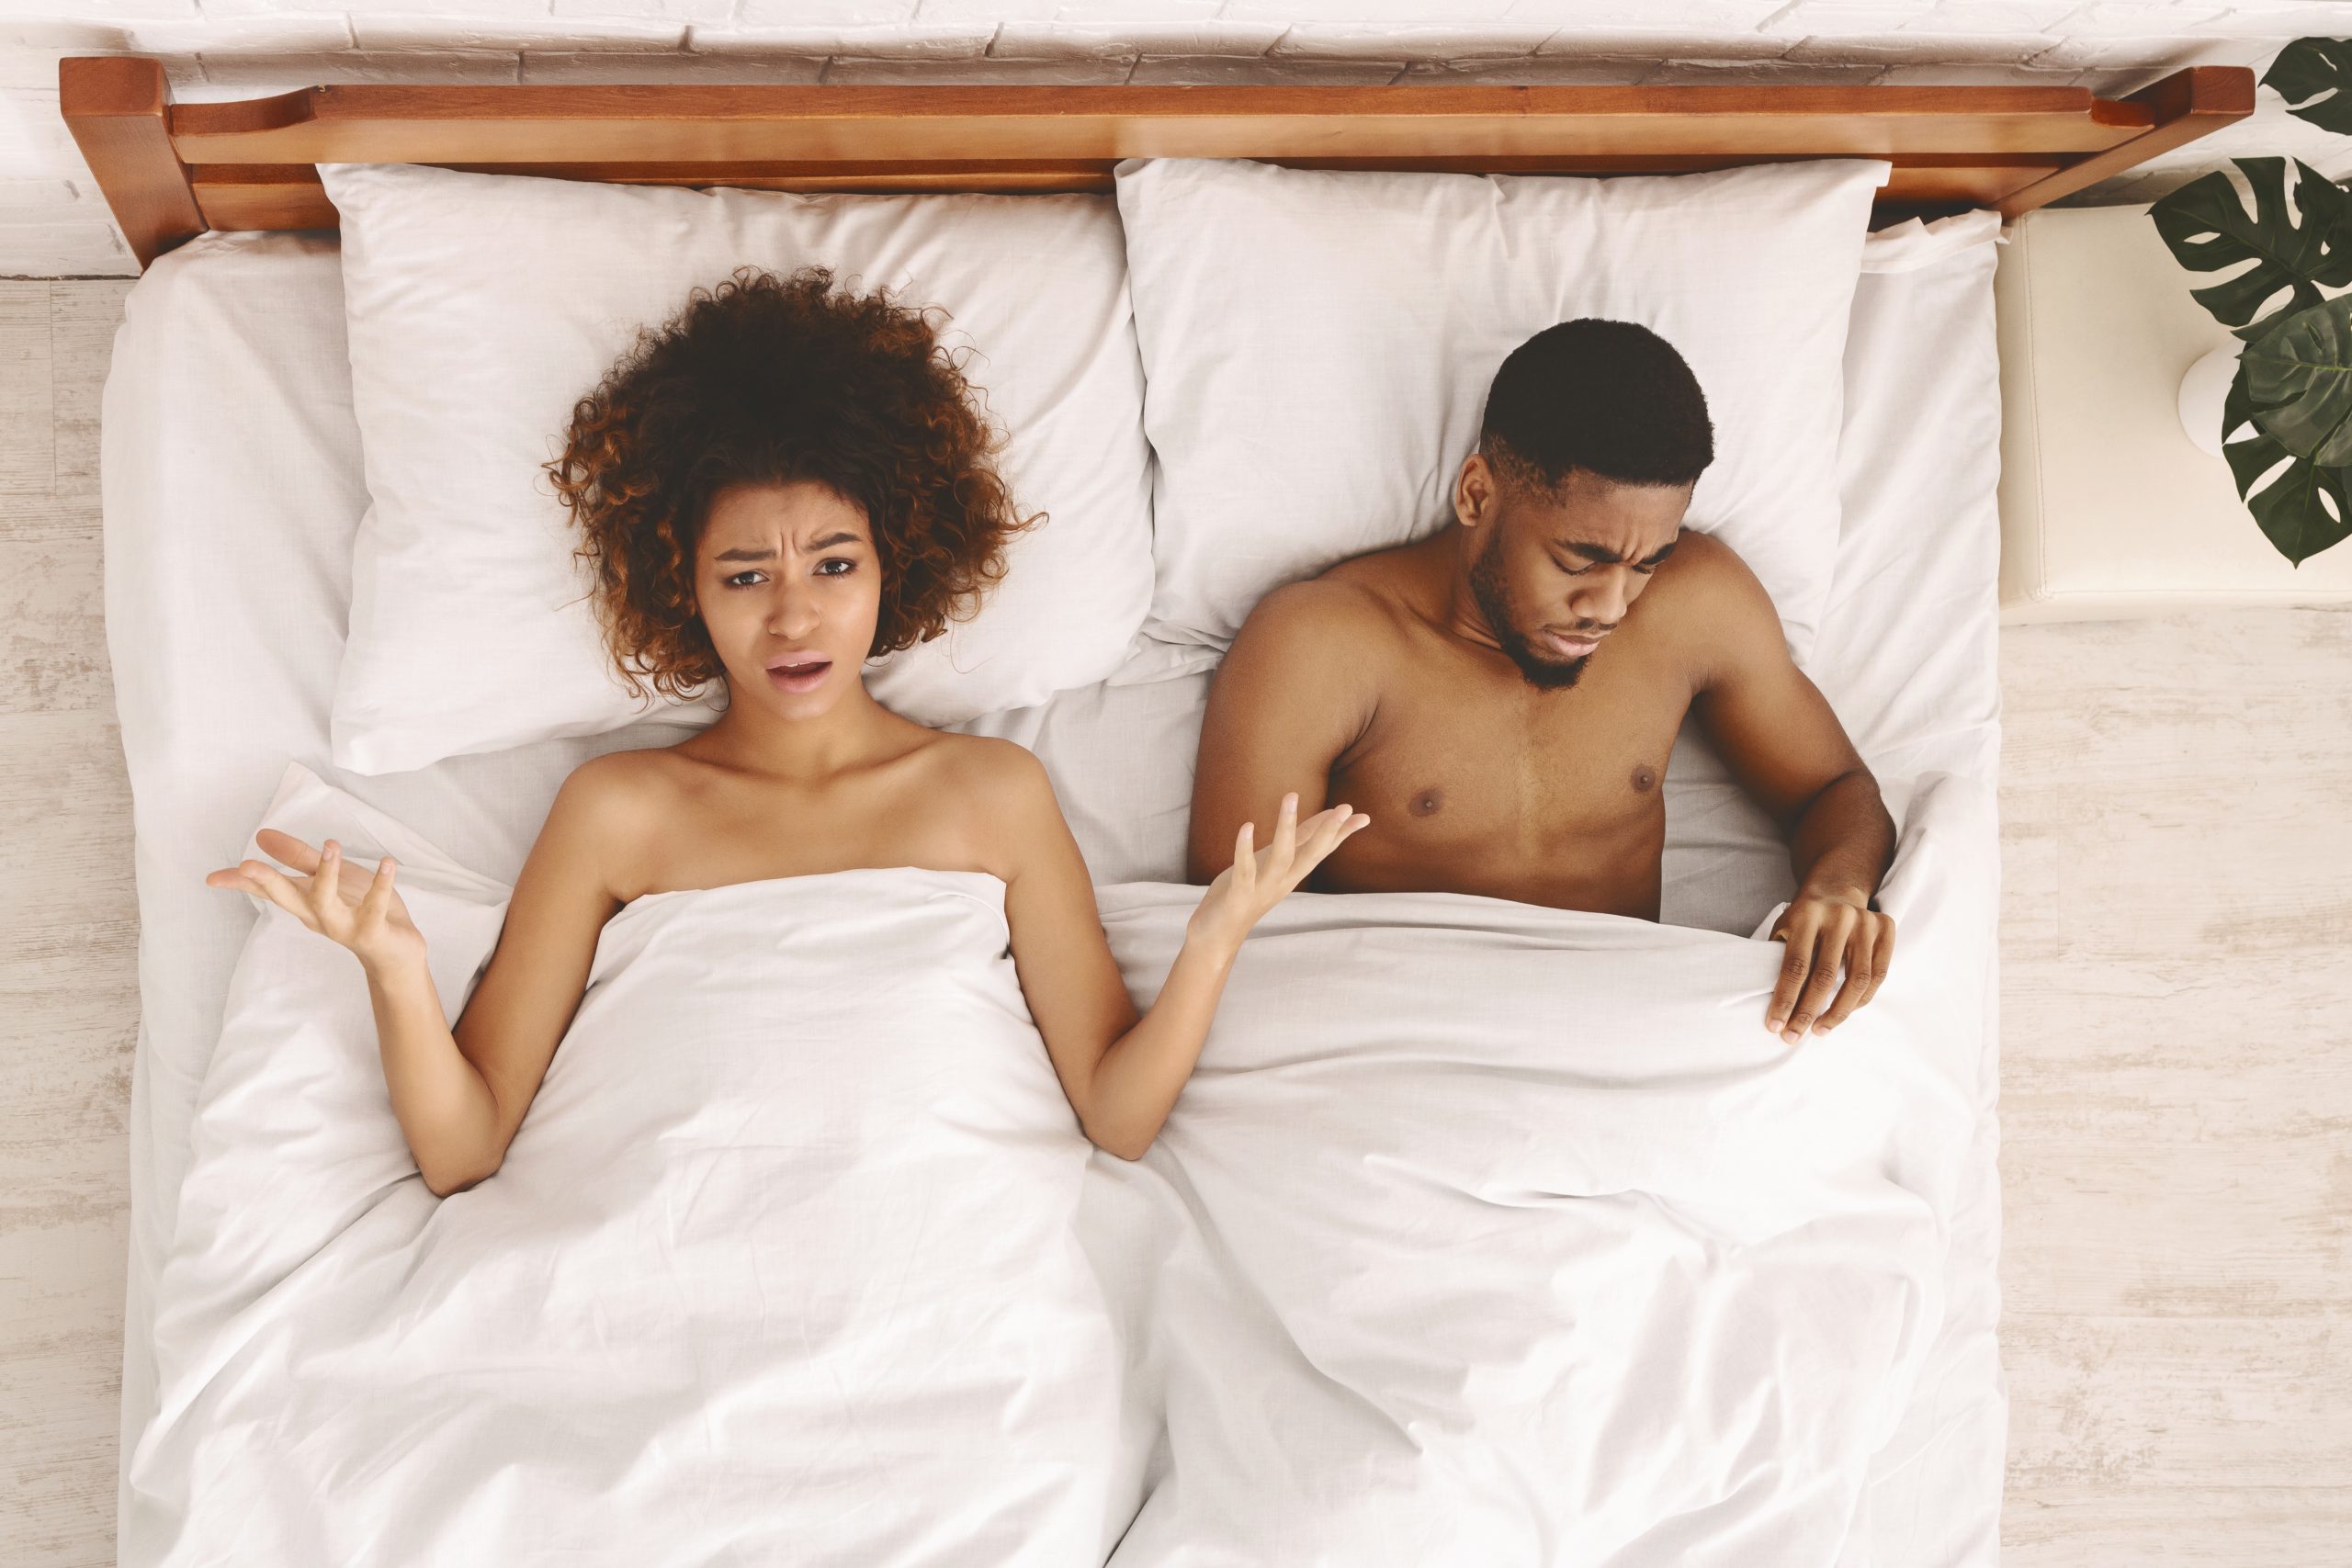 Sexuelles Problem. Enttäuschte schwarze unbefriedigte Frau im Bett liegend, trauriger Mann schaut unter die Decke, Draufsicht